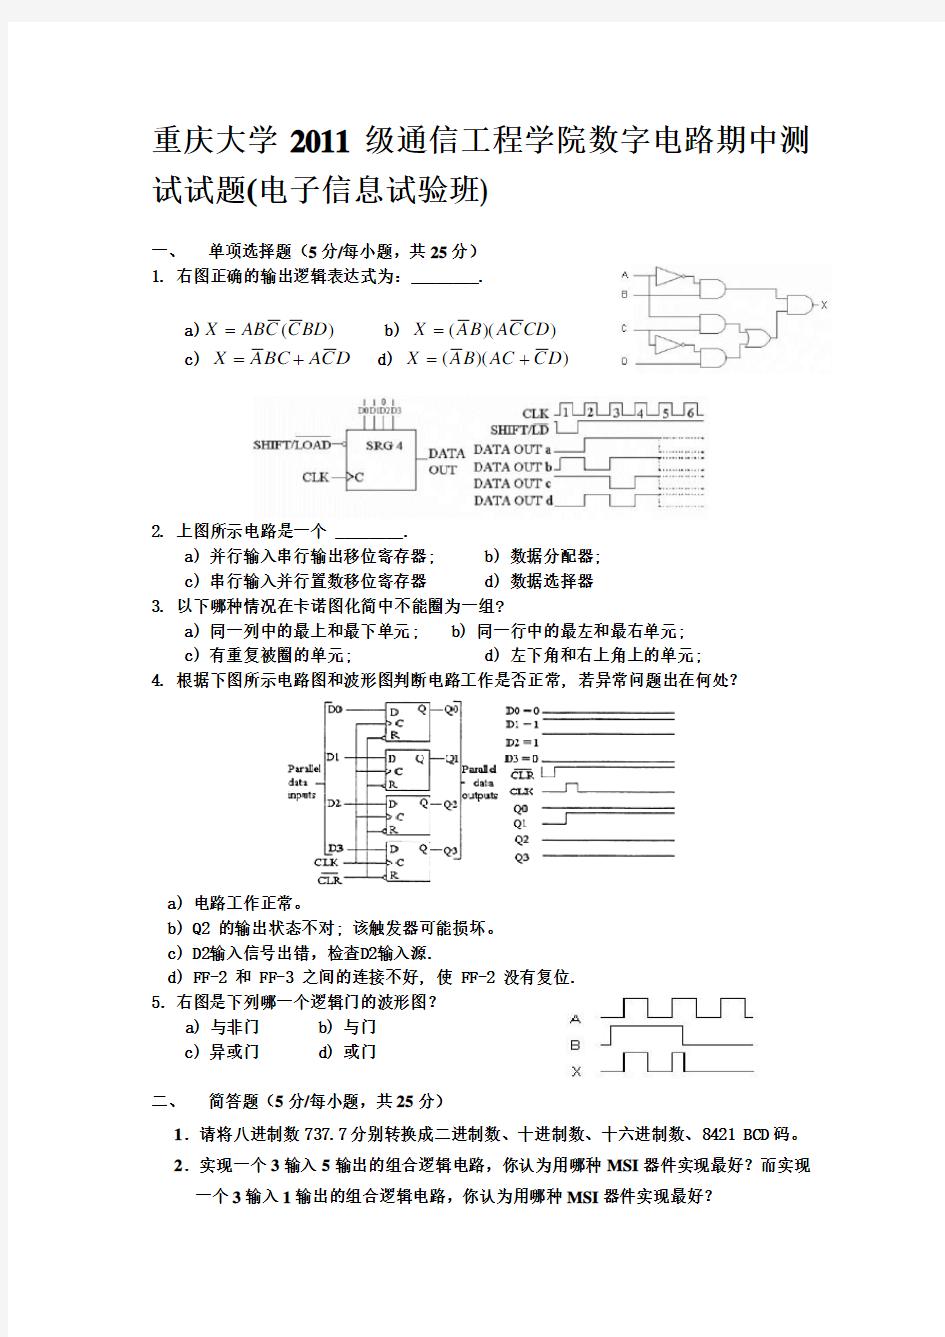 重庆大学通信工程学院数字电路期中测试试题